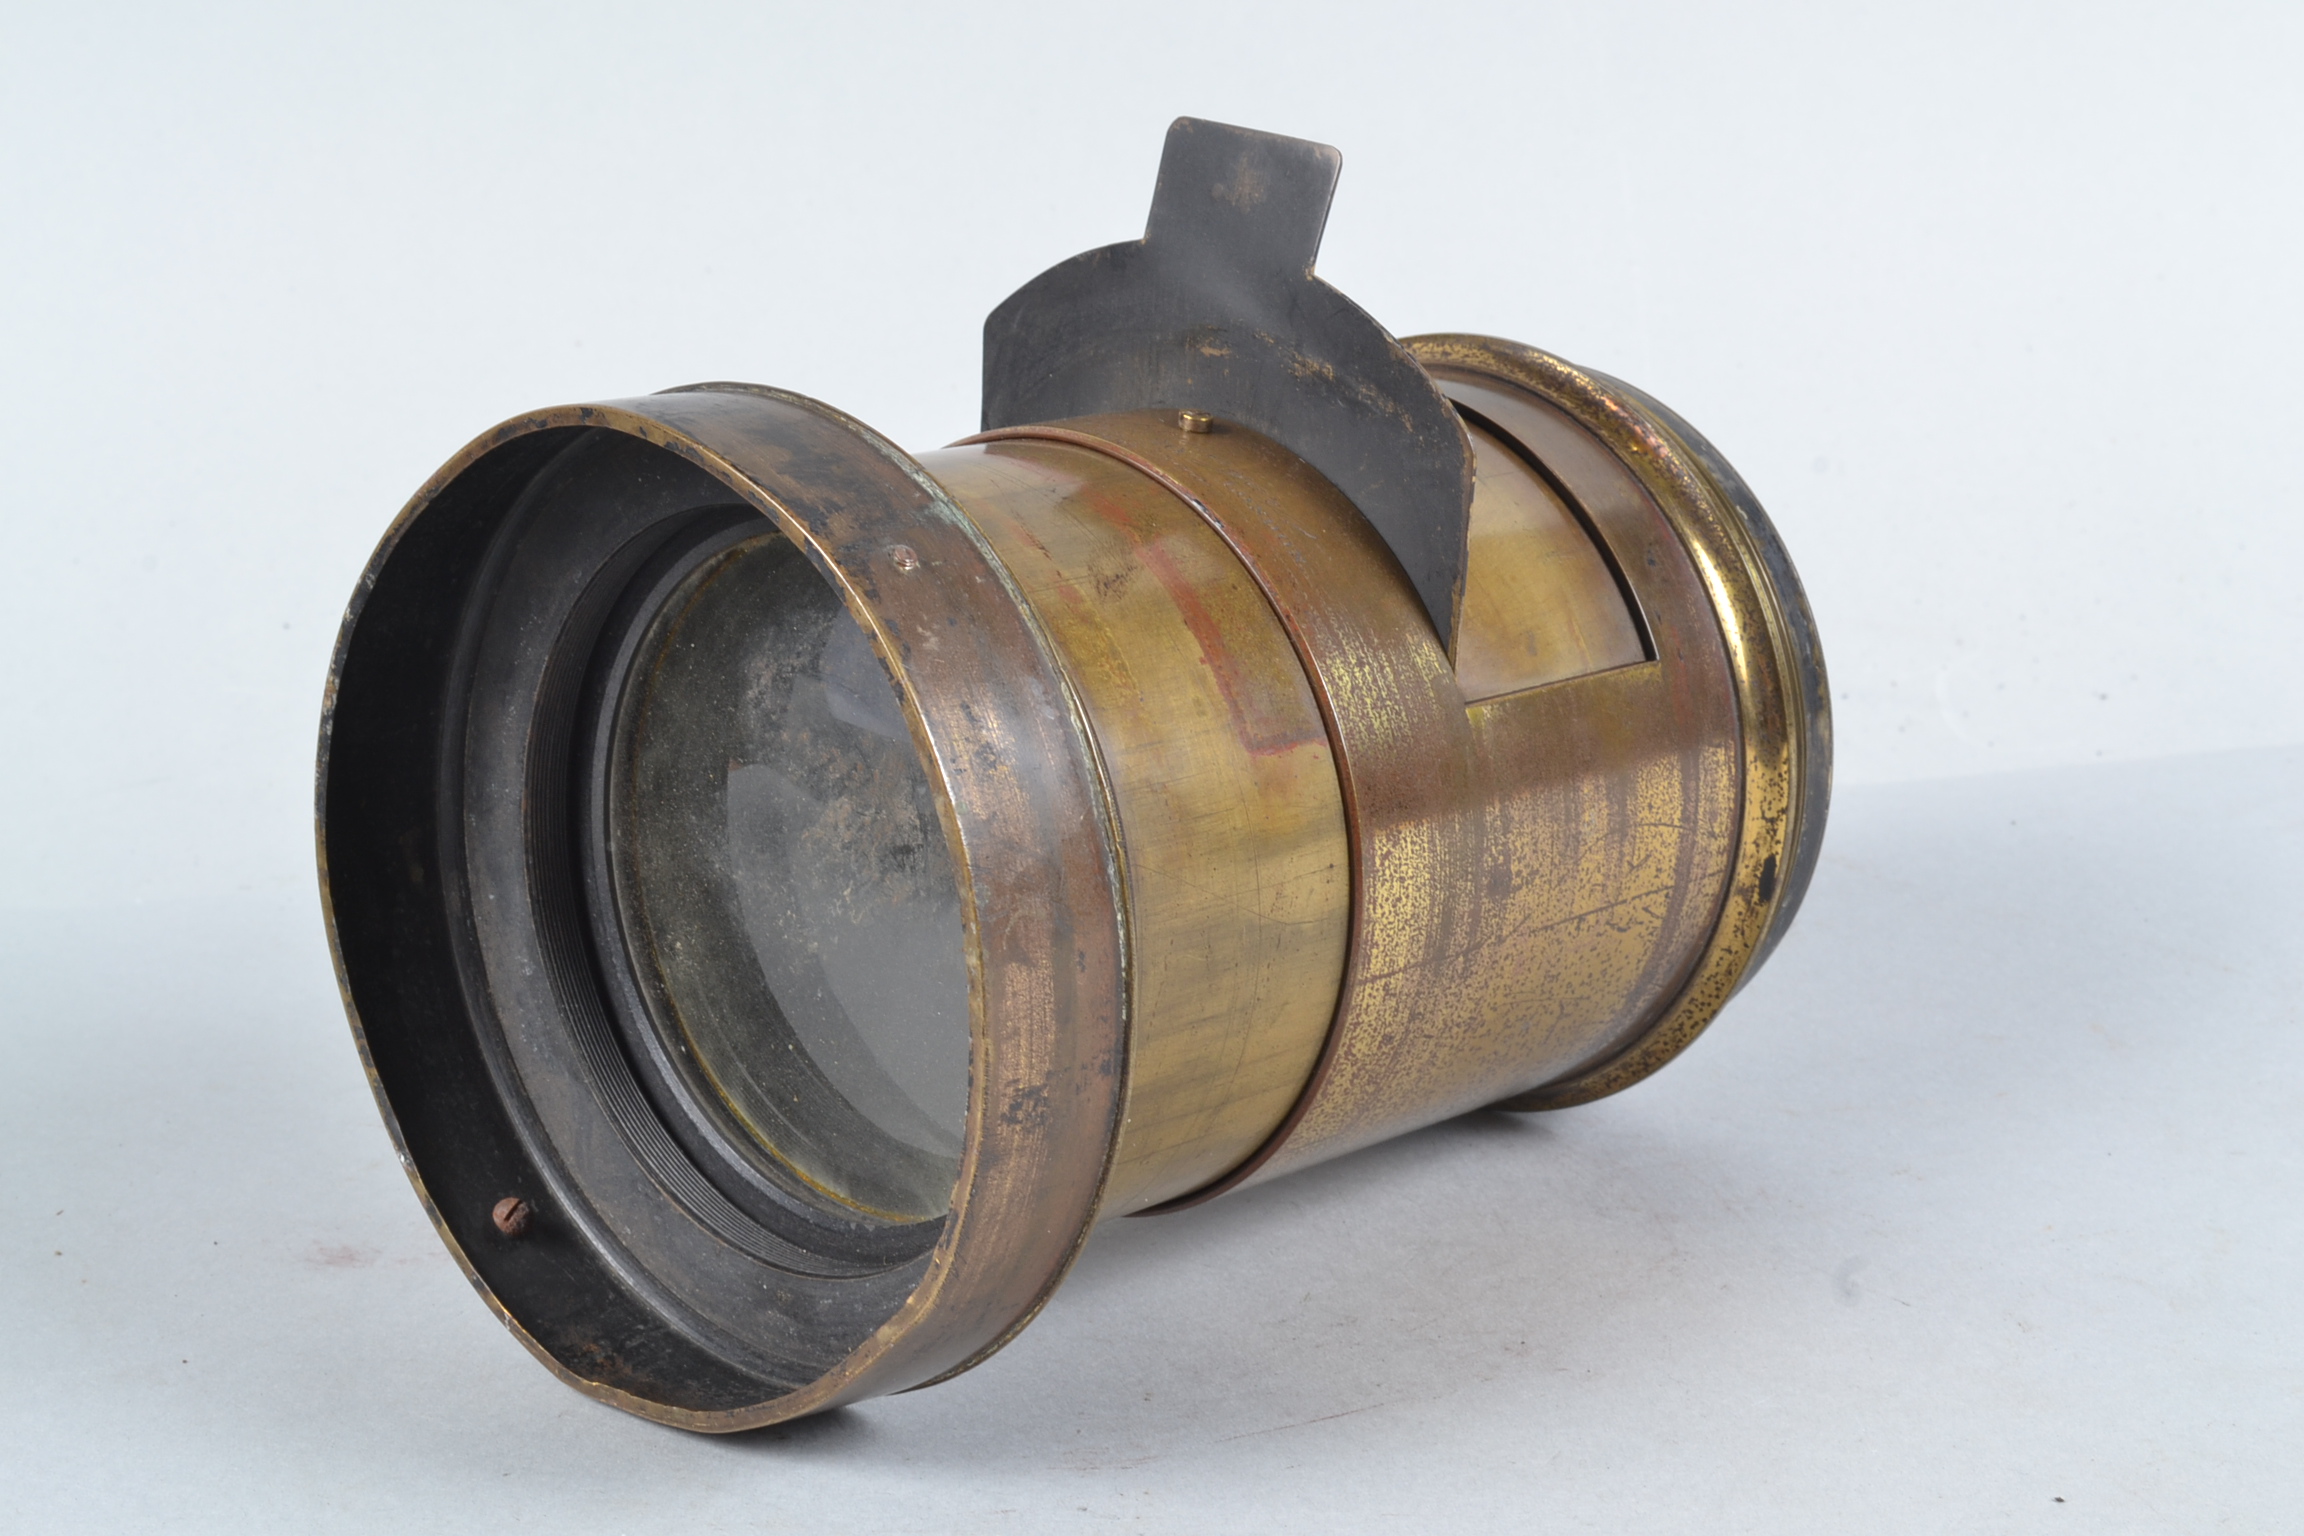 A J.H. Dallmeyer 22 x 20 Rapid Rectilinear Brass Lens, serial no 46968, circa 1890, focal length